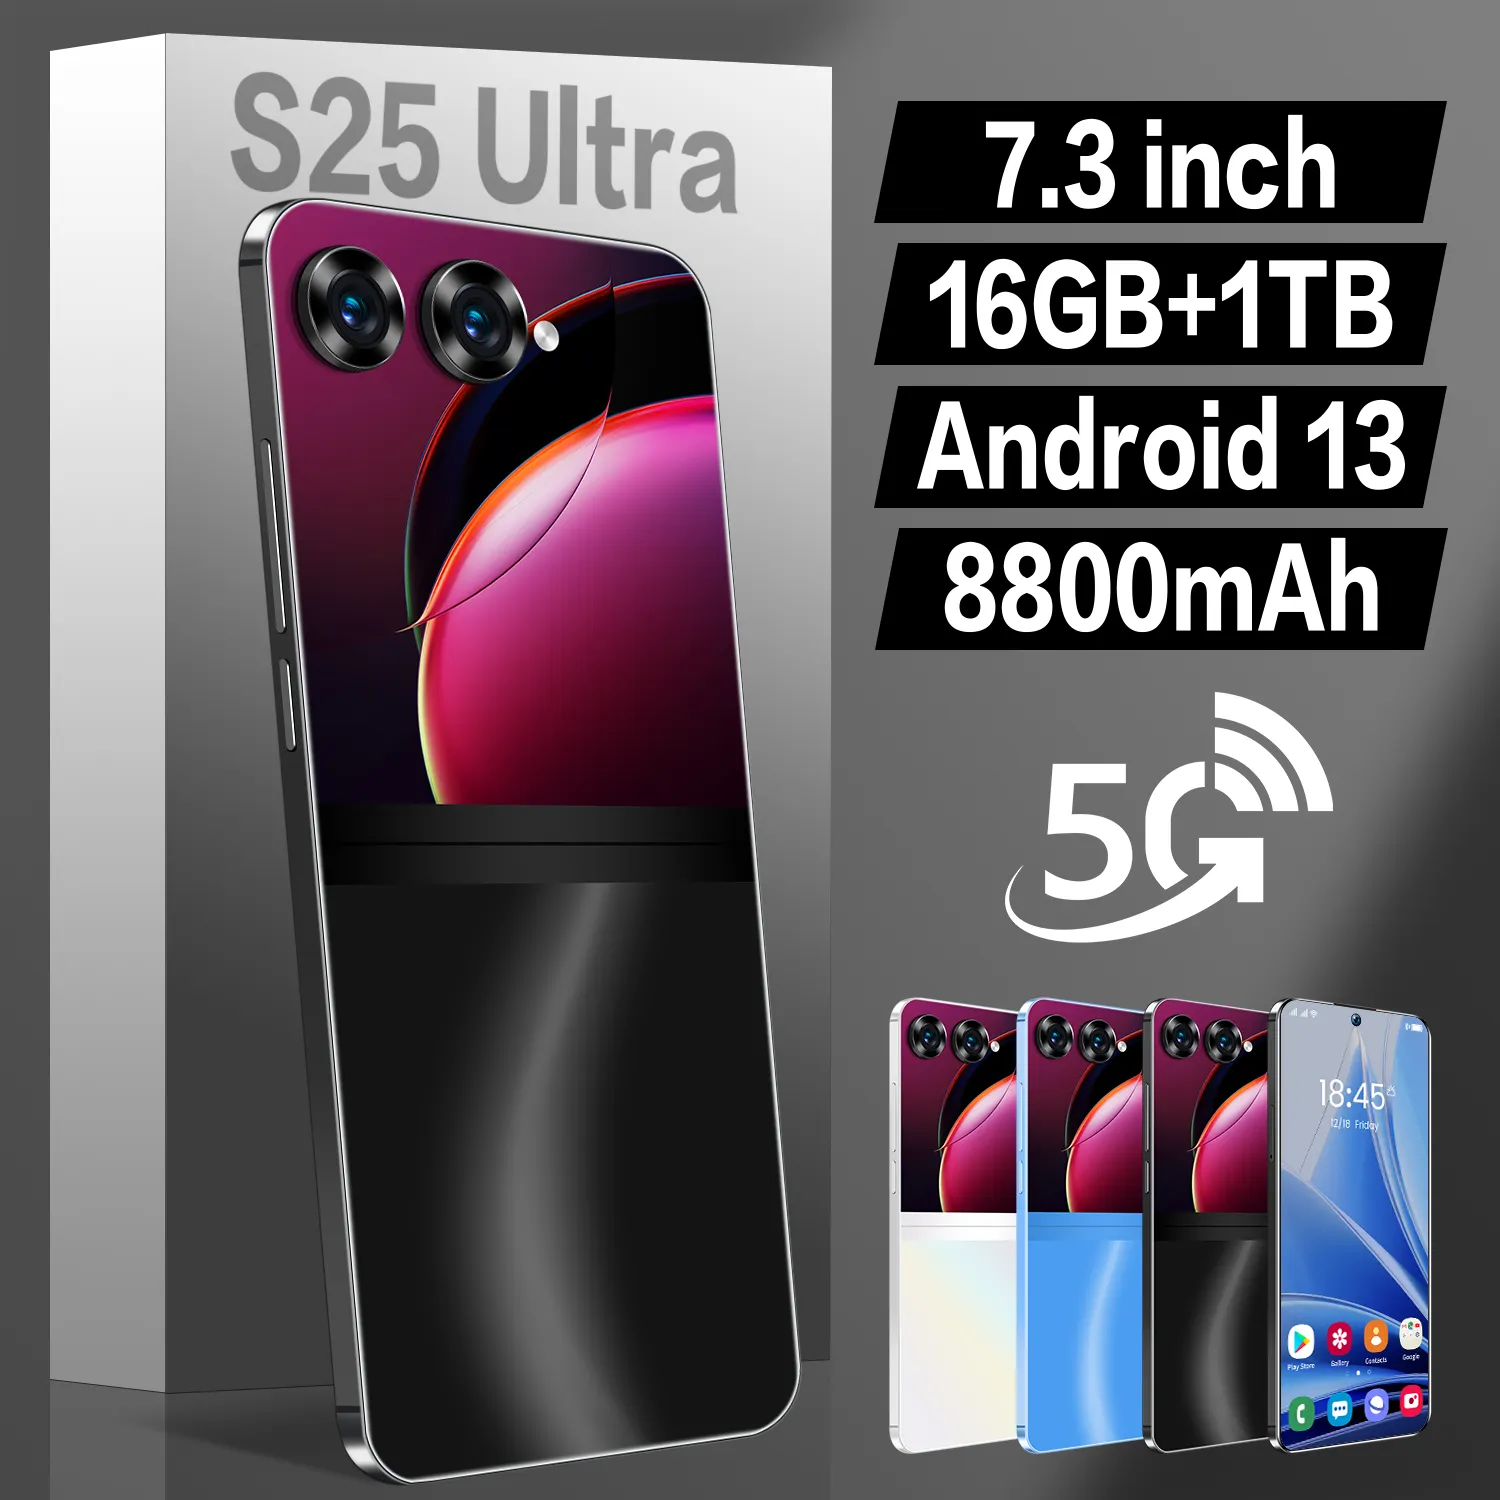 S25 ultra + Beauty camera 4g 5g sbloccato di alta qualità dual sim card smartphone